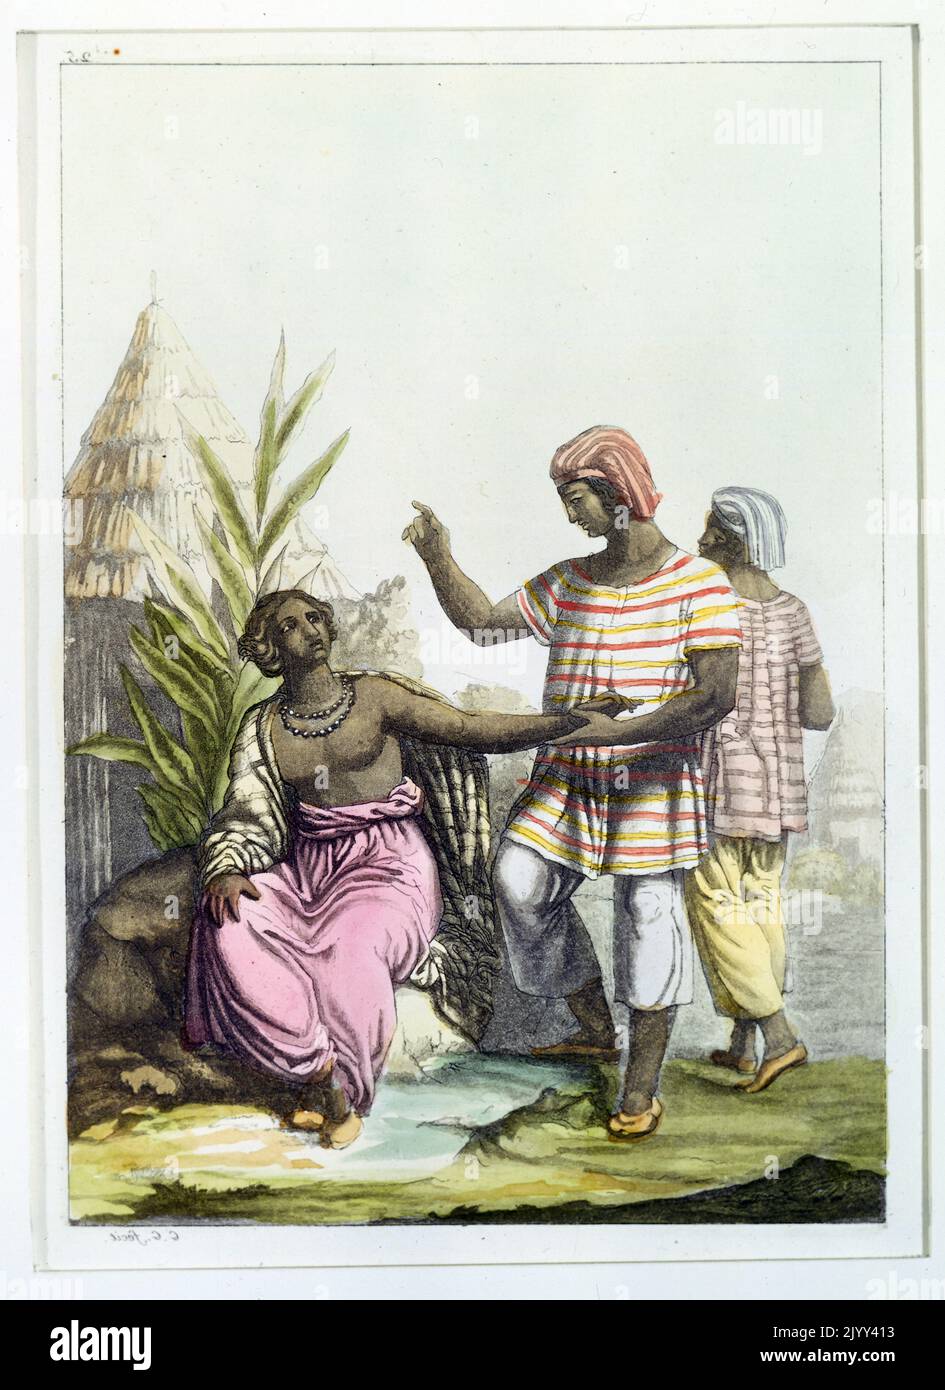 1827 Abbildung der Mandika-Stammesmenschen. Die Mandinka (auch bekannt als Mandenka, Mandinko, Mandingo, Manding oder Malinke) sind eine afrikanische ethnische Gruppe mit einer geschätzten Weltbevölkerung von 11 Millionen Menschen (die anderen drei größten ethnischen Gruppen in Afrika sind die nicht verwandten Fula-, Hausa- und Songhai-Völker). Die Mandinka sind die Nachfahren des Mali-Imperium, das im 13.. Jahrhundert an die Macht kam Stockfoto